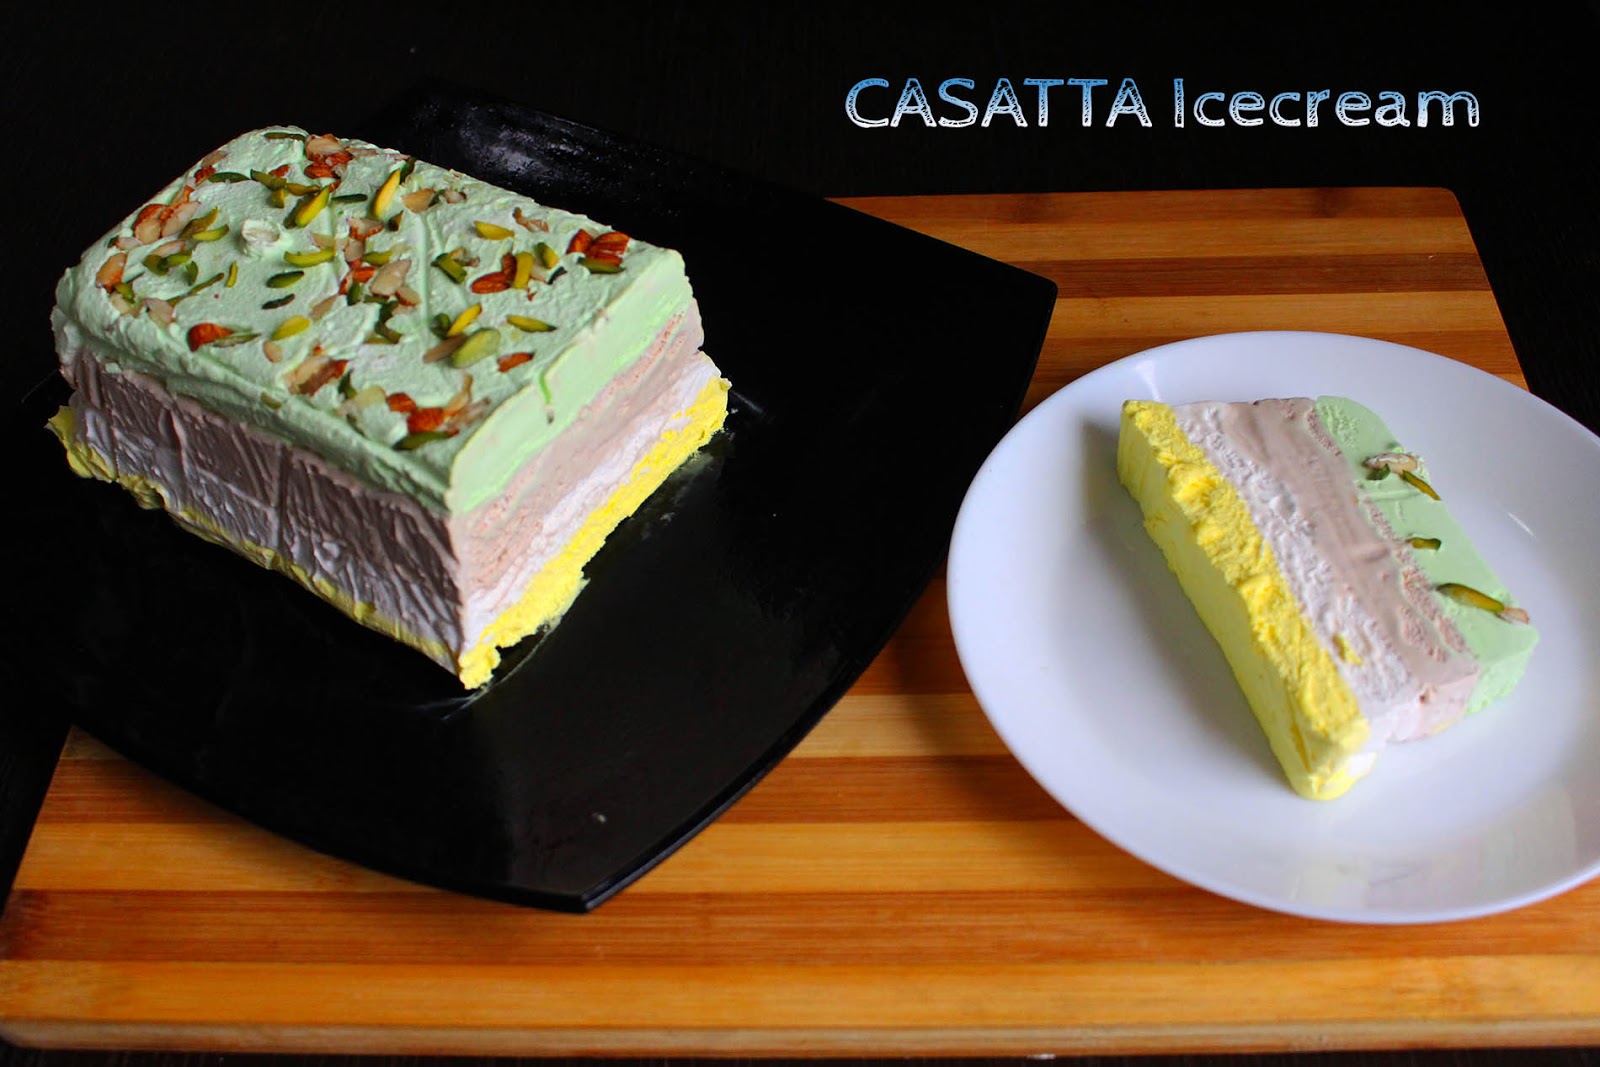 CASSATA ICECREAM RECIPE - HOW TO MAKE CASSATA ICE CREAM AT HOME